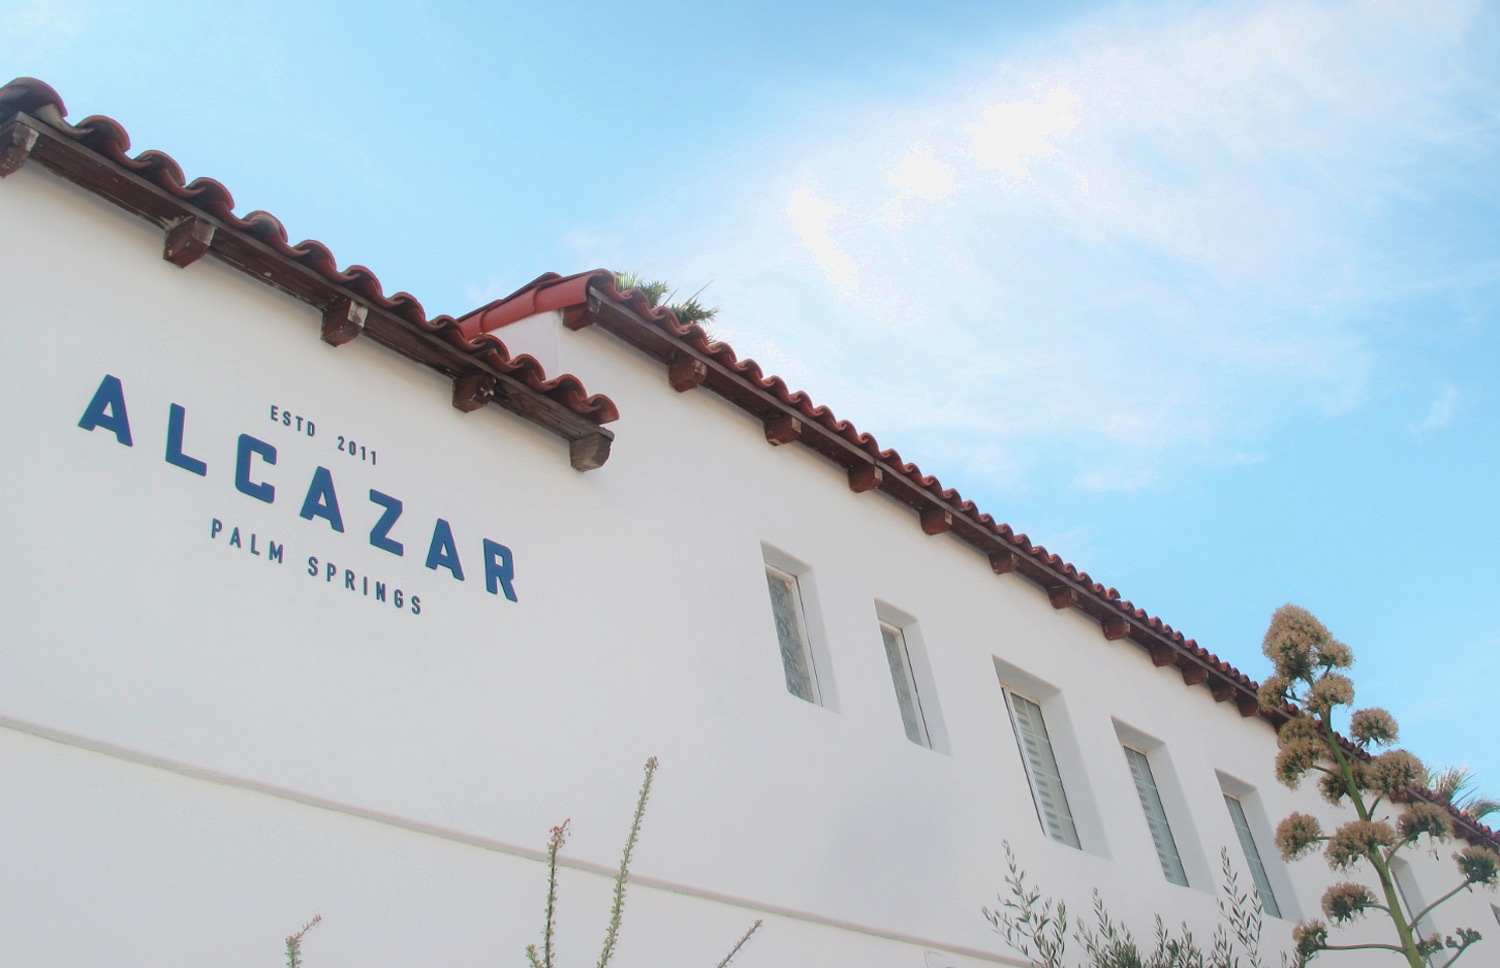 Alcazar Hotel with sky and logo